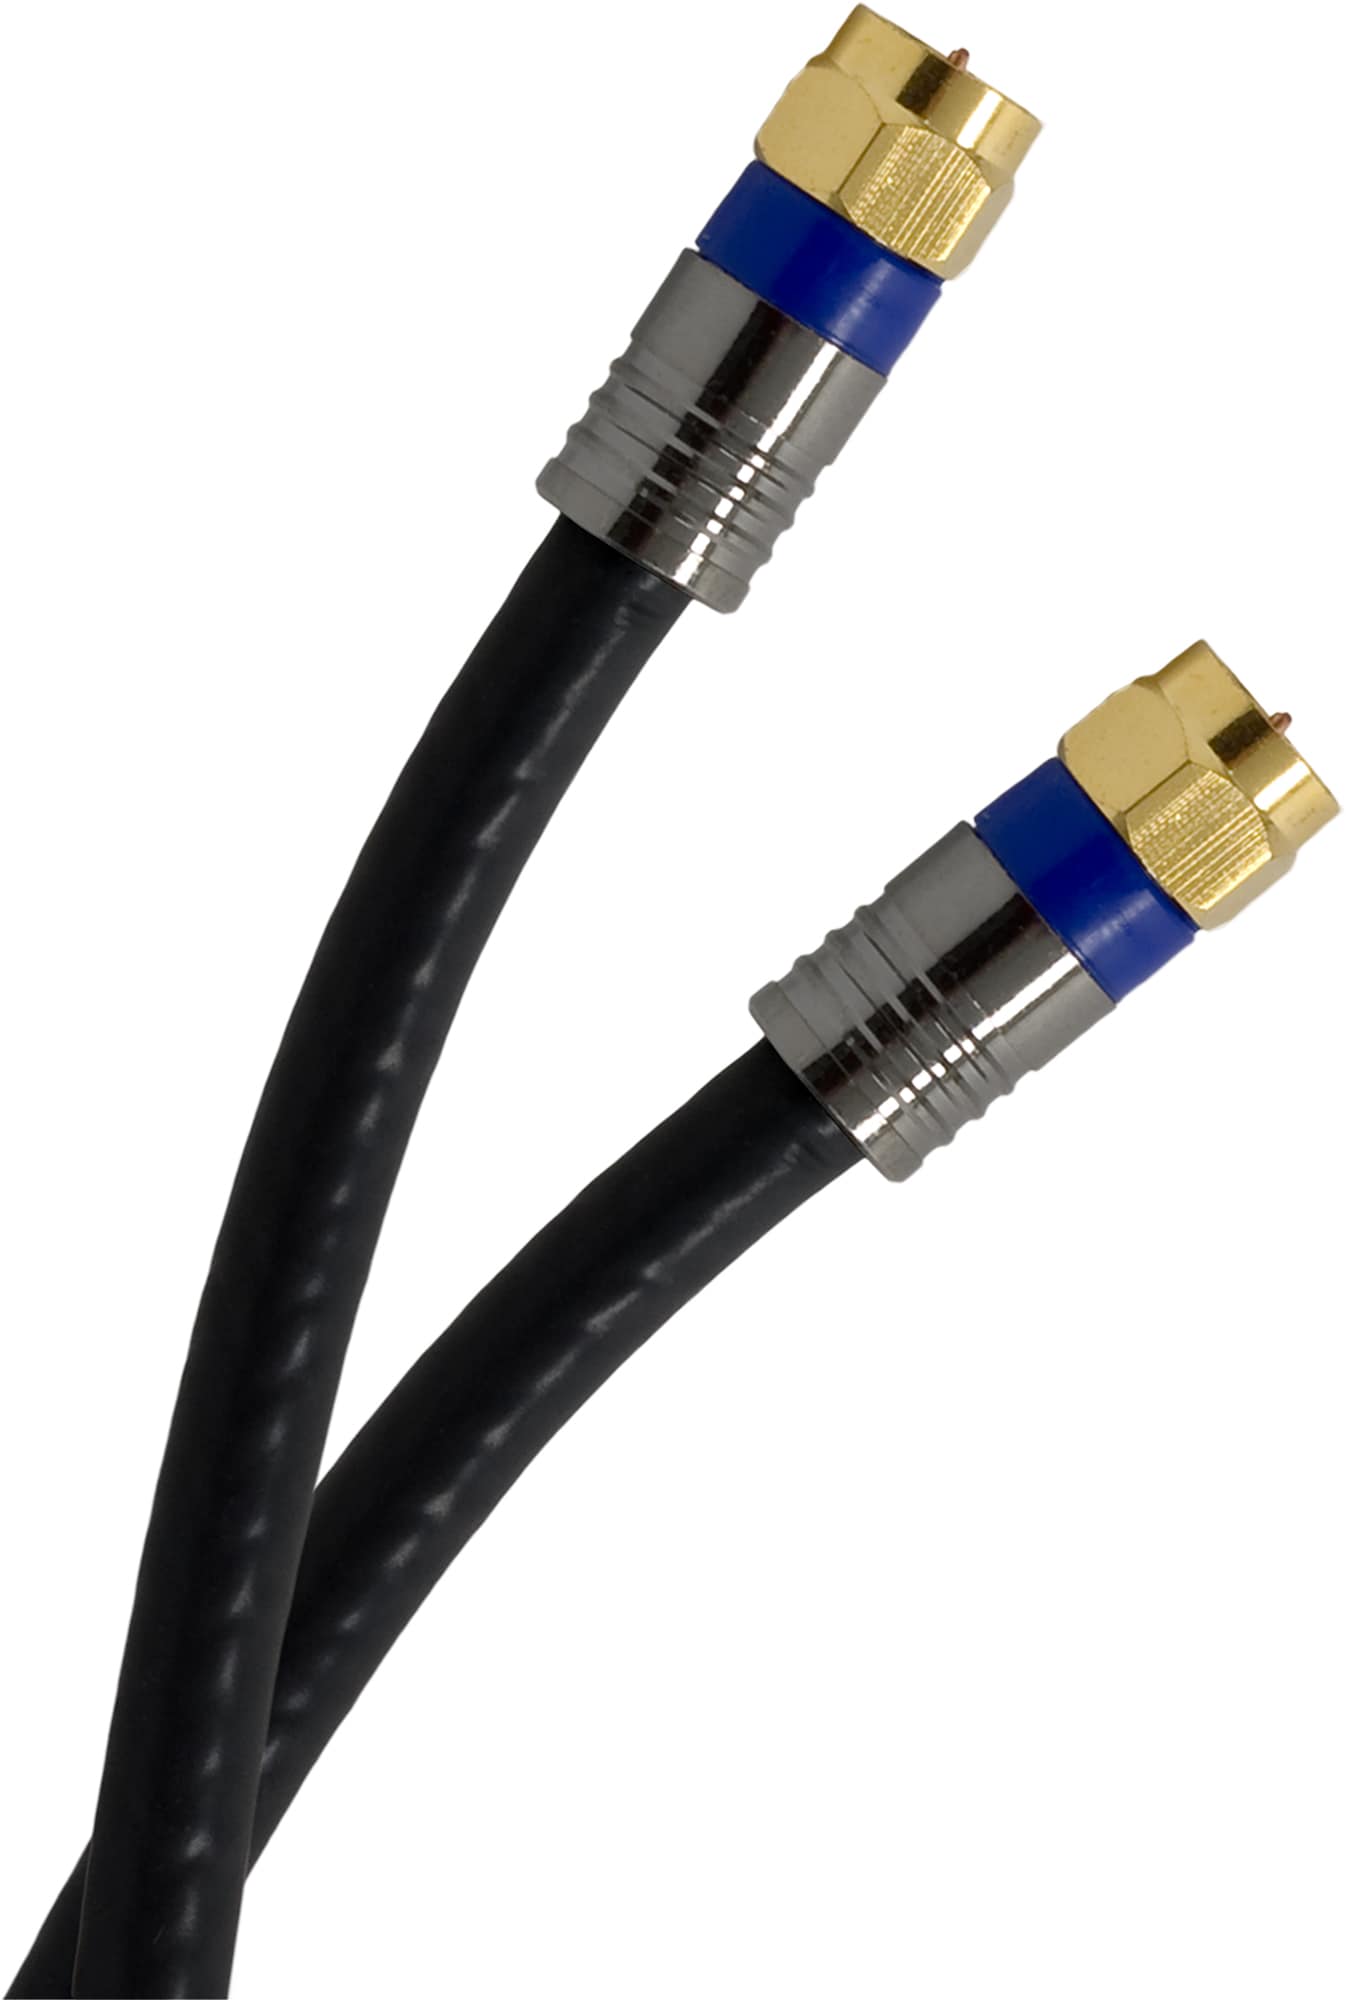 100FT RG11 Quad Shield Coaxial Cable w/ CONNECTORS   